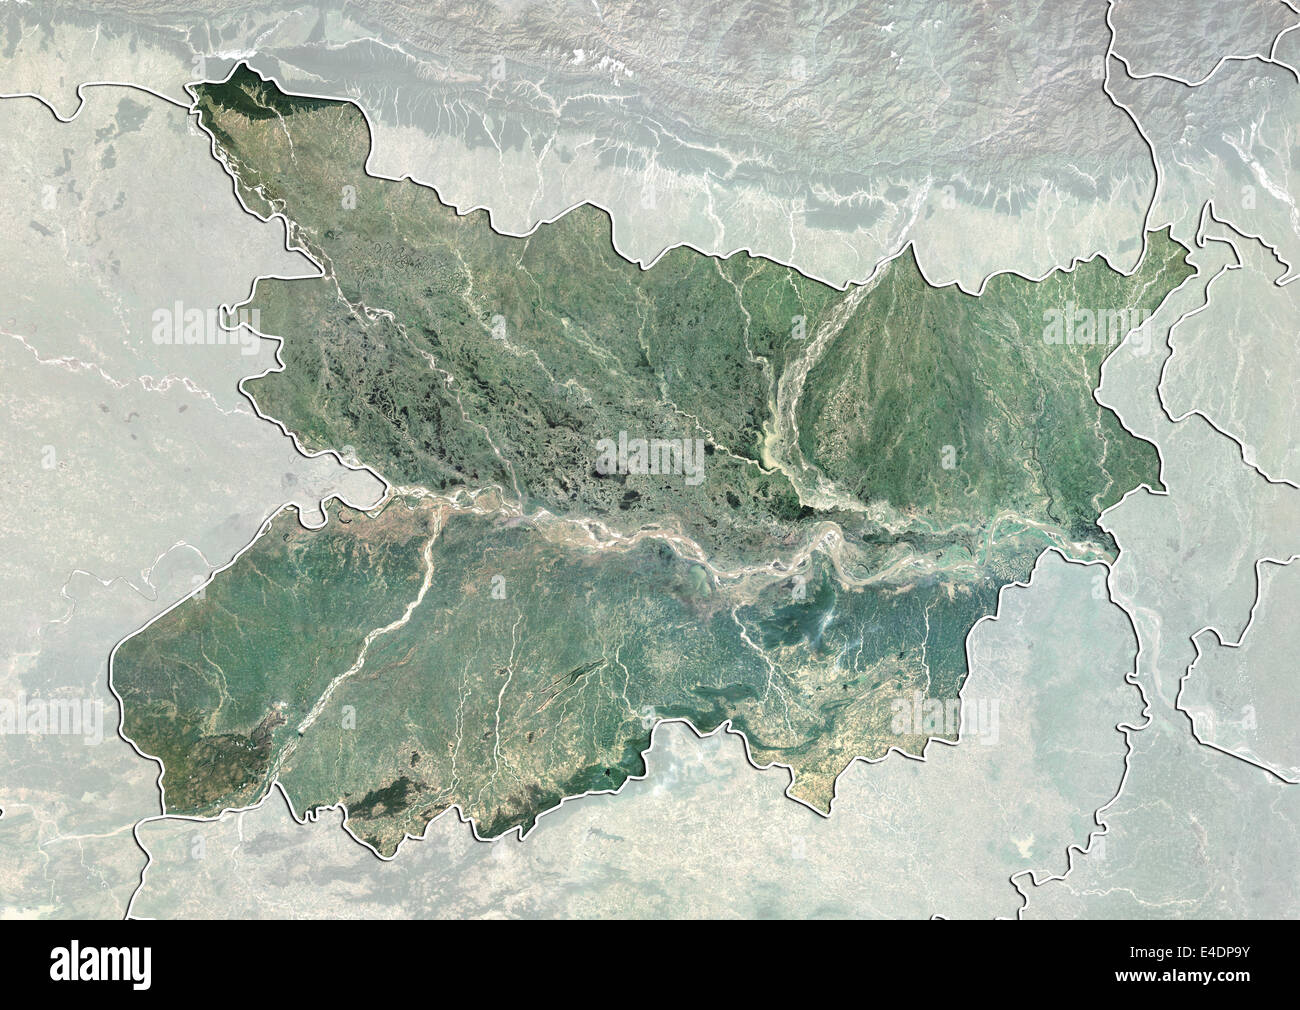 Bundesstaat Bihar, Indien, Echtfarben-Satellitenbild Stockfoto